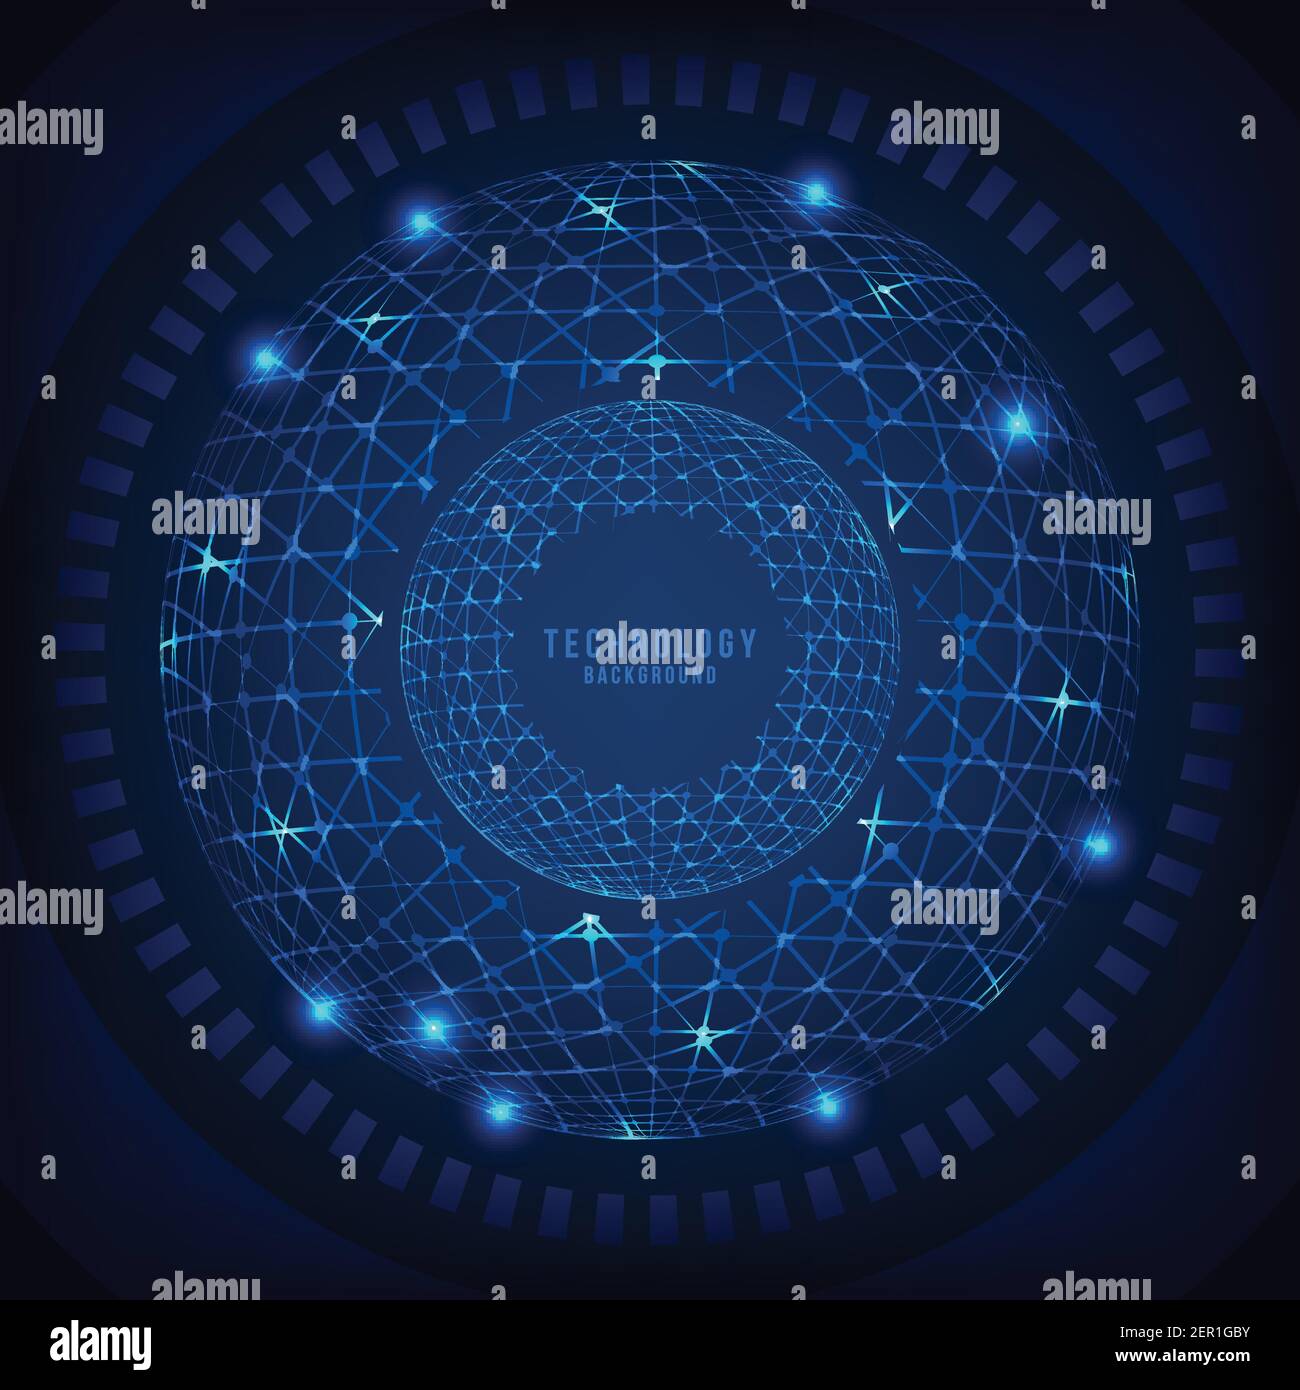 Abstrakte Technologie Linie blaue Struktur System der Internet-Verbindung Vorlage. Überlappung des neuen Designs mit Lichtern Funken Hintergrund. Illustration V Stock Vektor